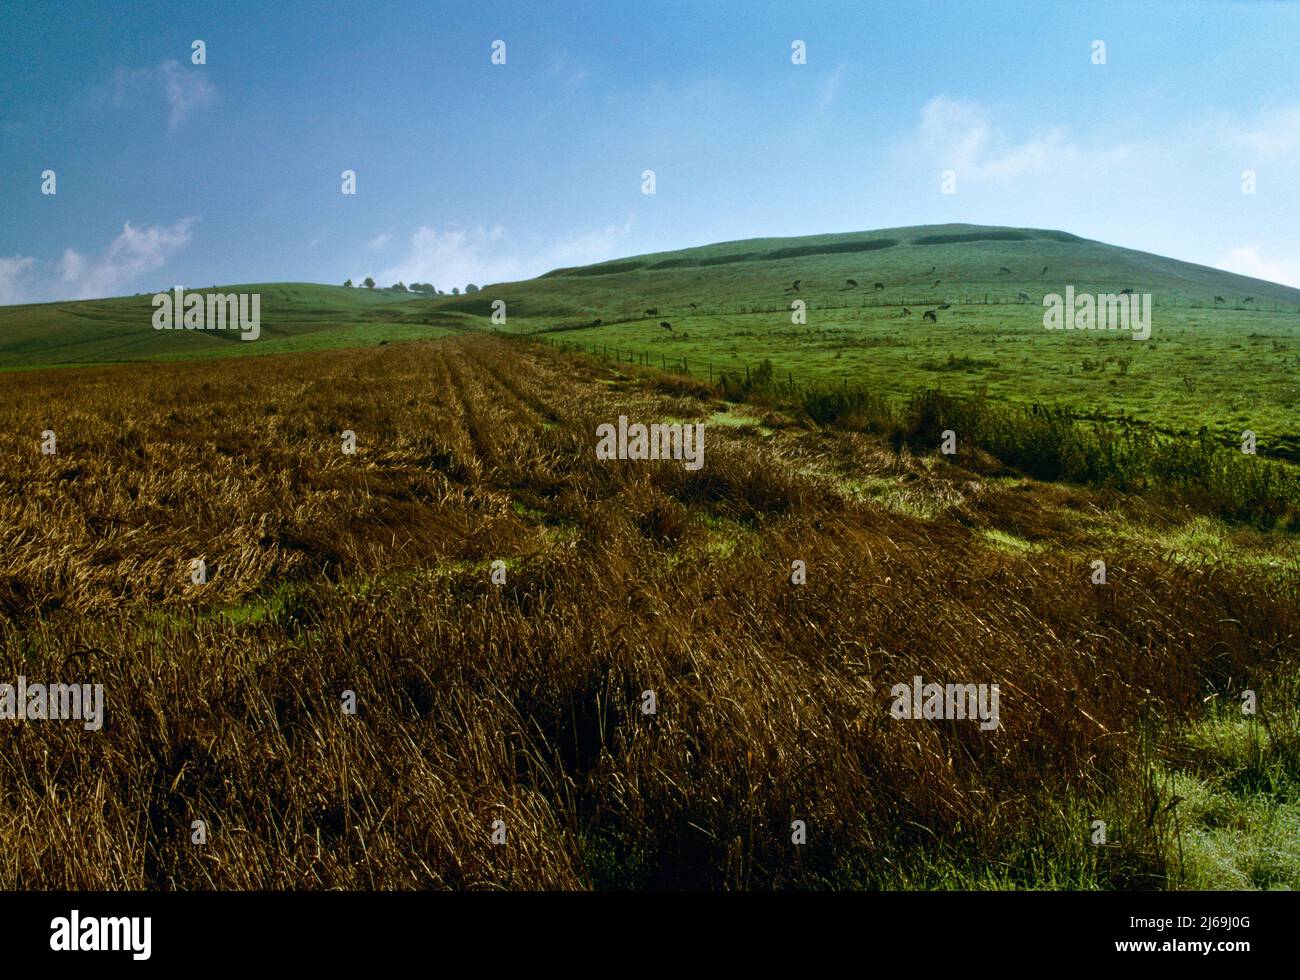 Ansicht E von Workway fuhr von Knap Hill Neolithische, kausevertierte Anlage auf einem abgerundeten Hügel mit Blick auf das Vale of Pewsey (nach R), Wiltshire, England, Großbritannien. Stockfoto